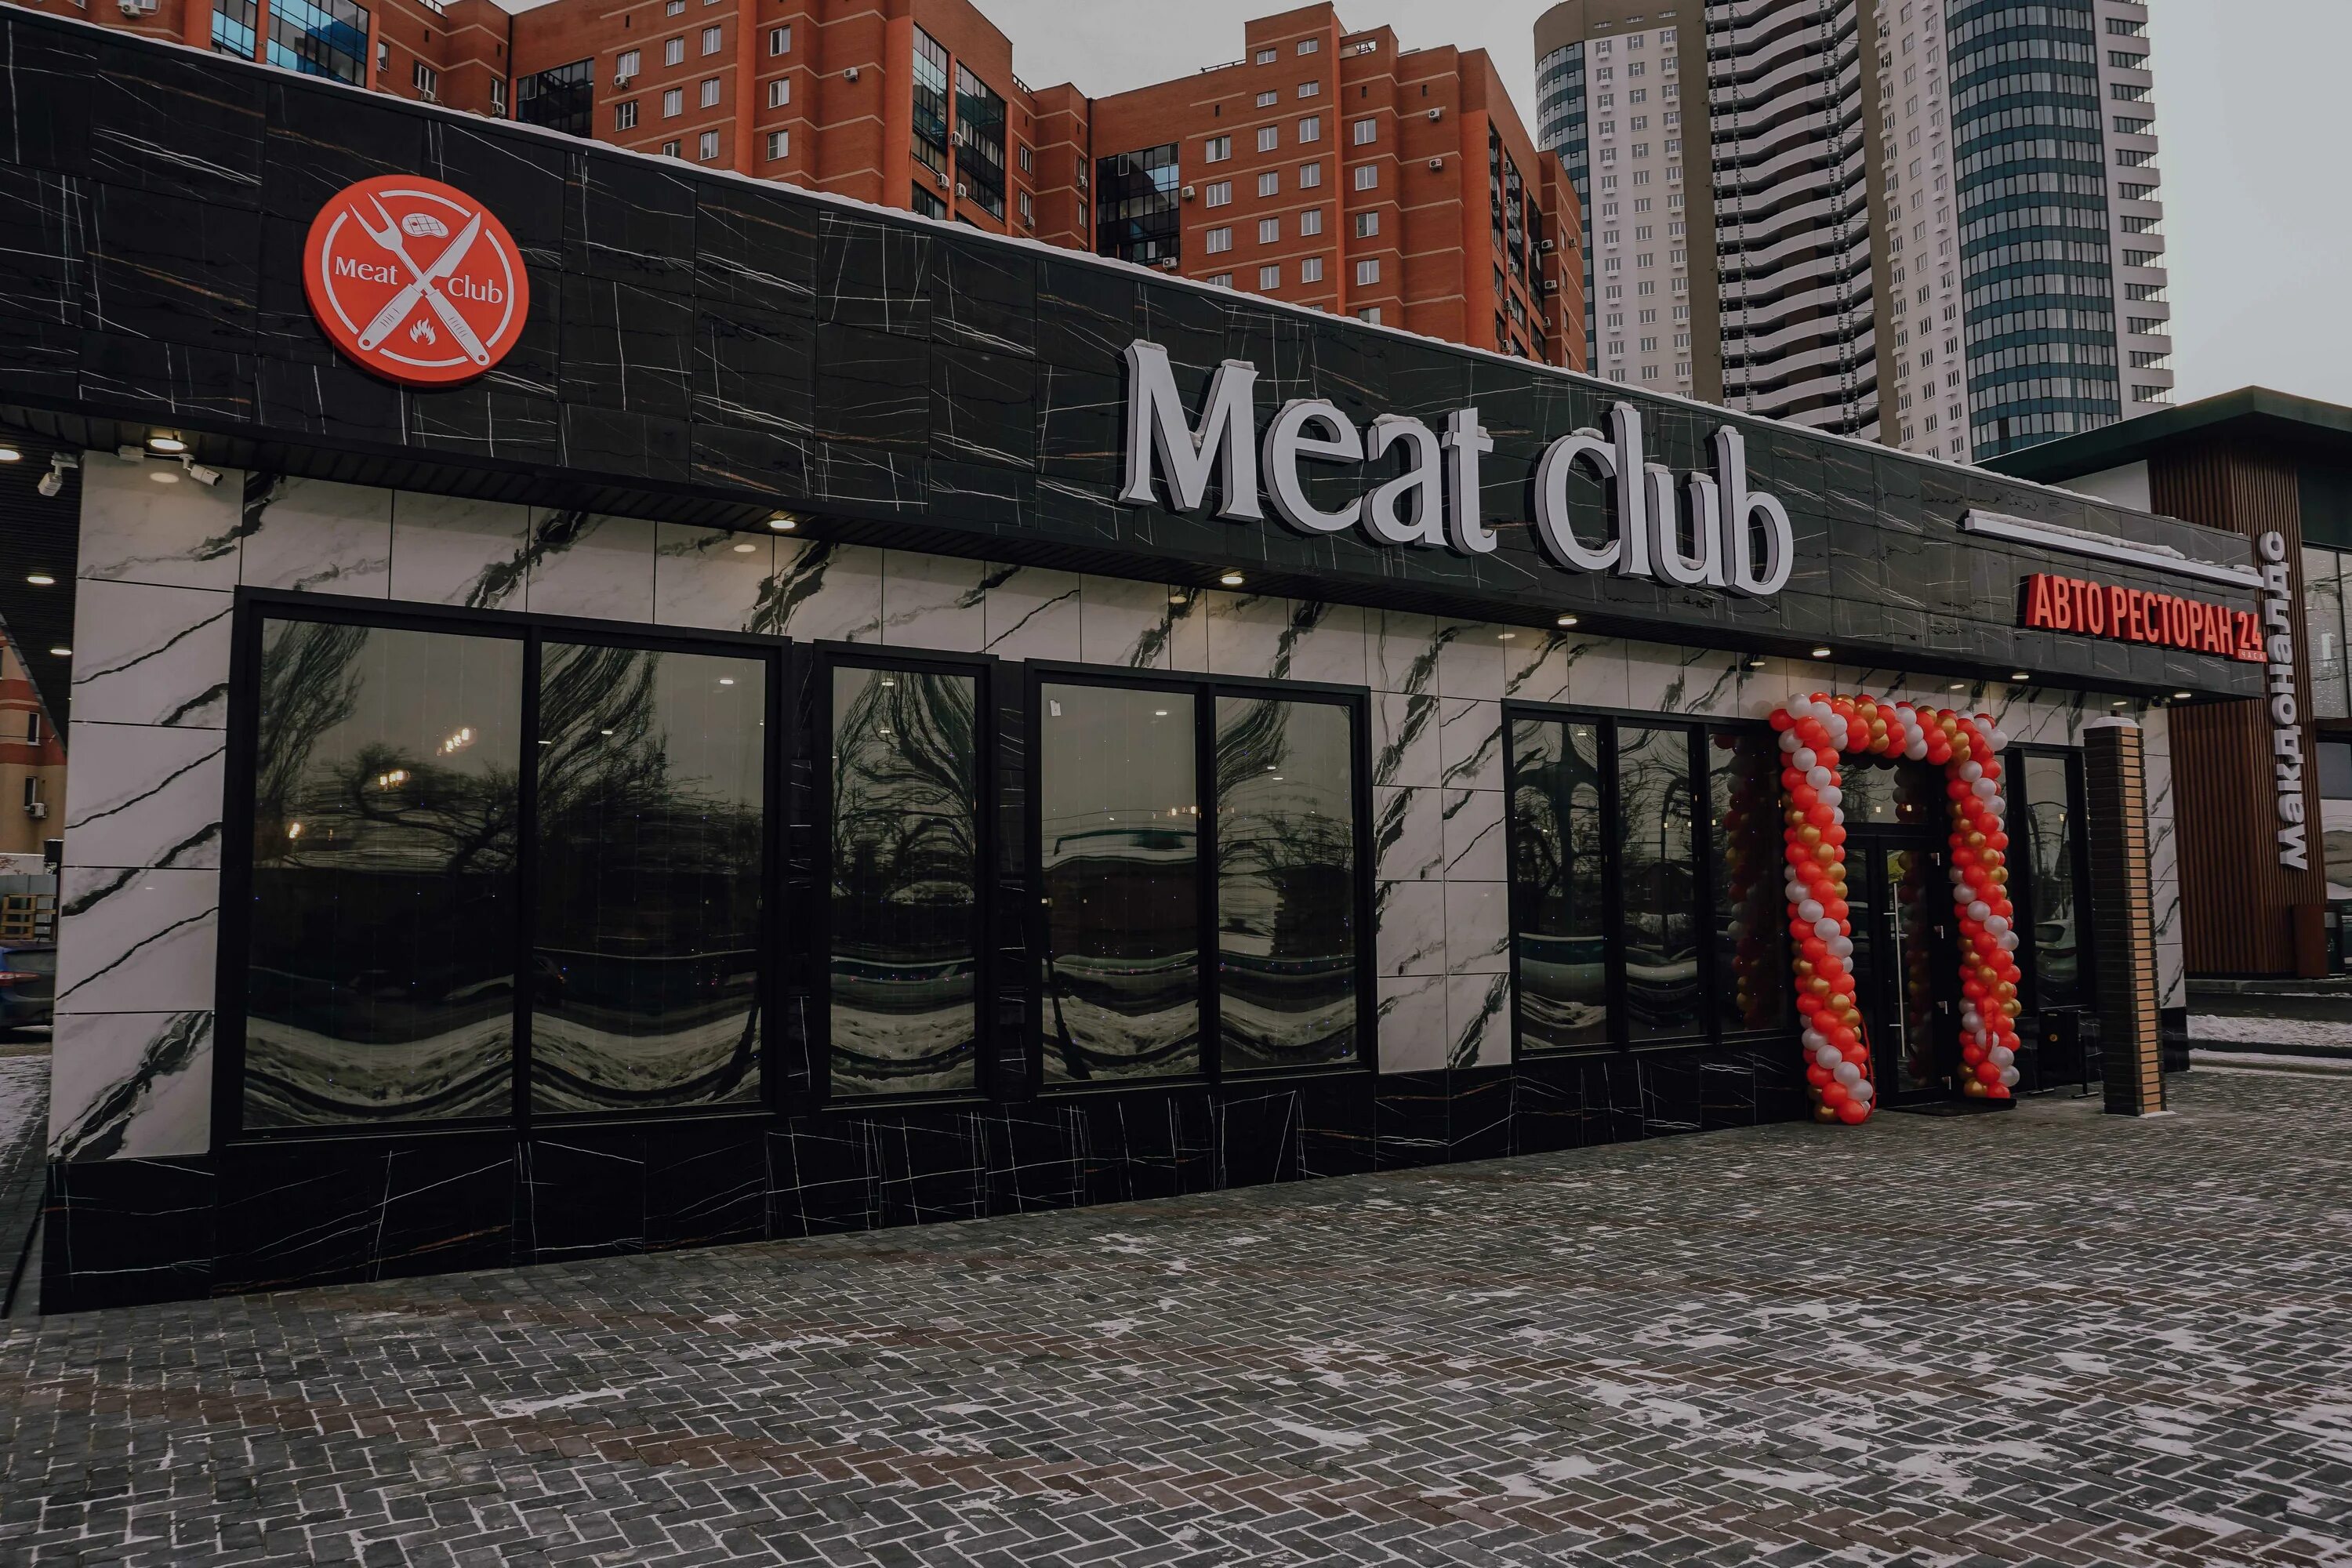 Московская 25 б. Meat Club Самара. Московское шоссе 25б Самара. Meat Club Самара авто ресторан. Ресторан Московское шоссе 25 б.